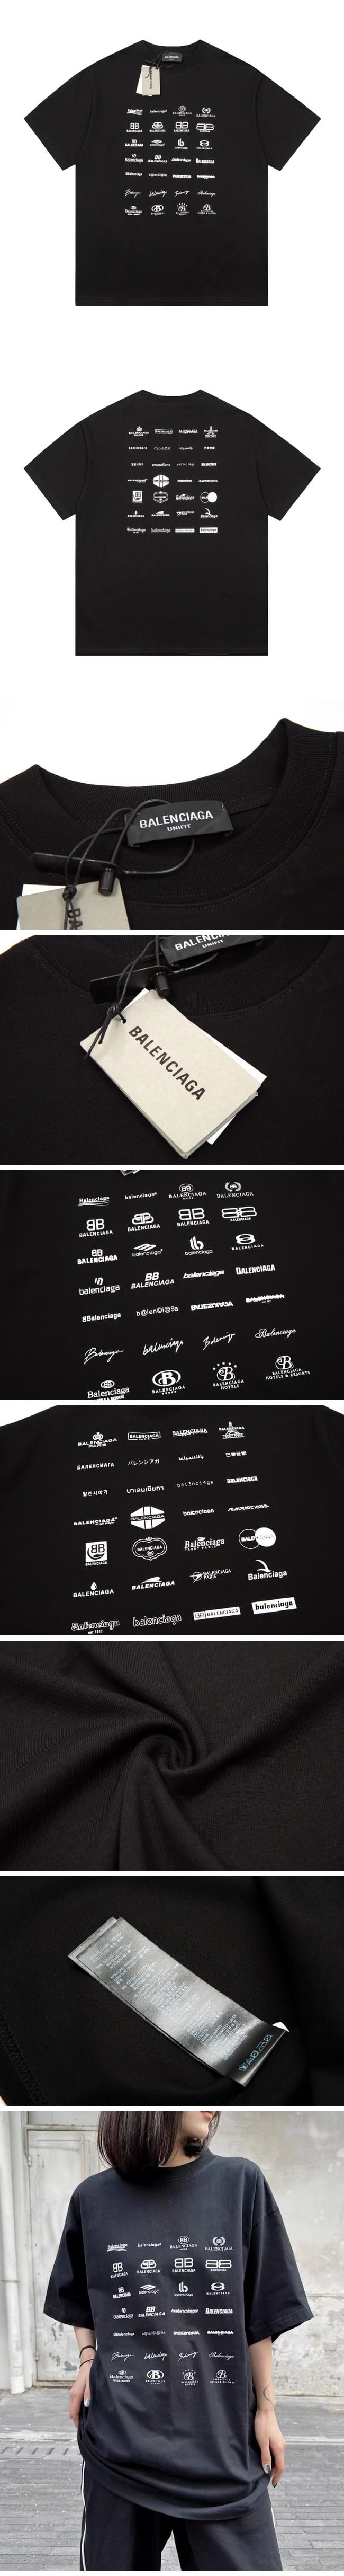 Balenciaga Archive Logos Print Tee Black バレンシアガ アーカイブ ロゴ Tシャツ ブラック